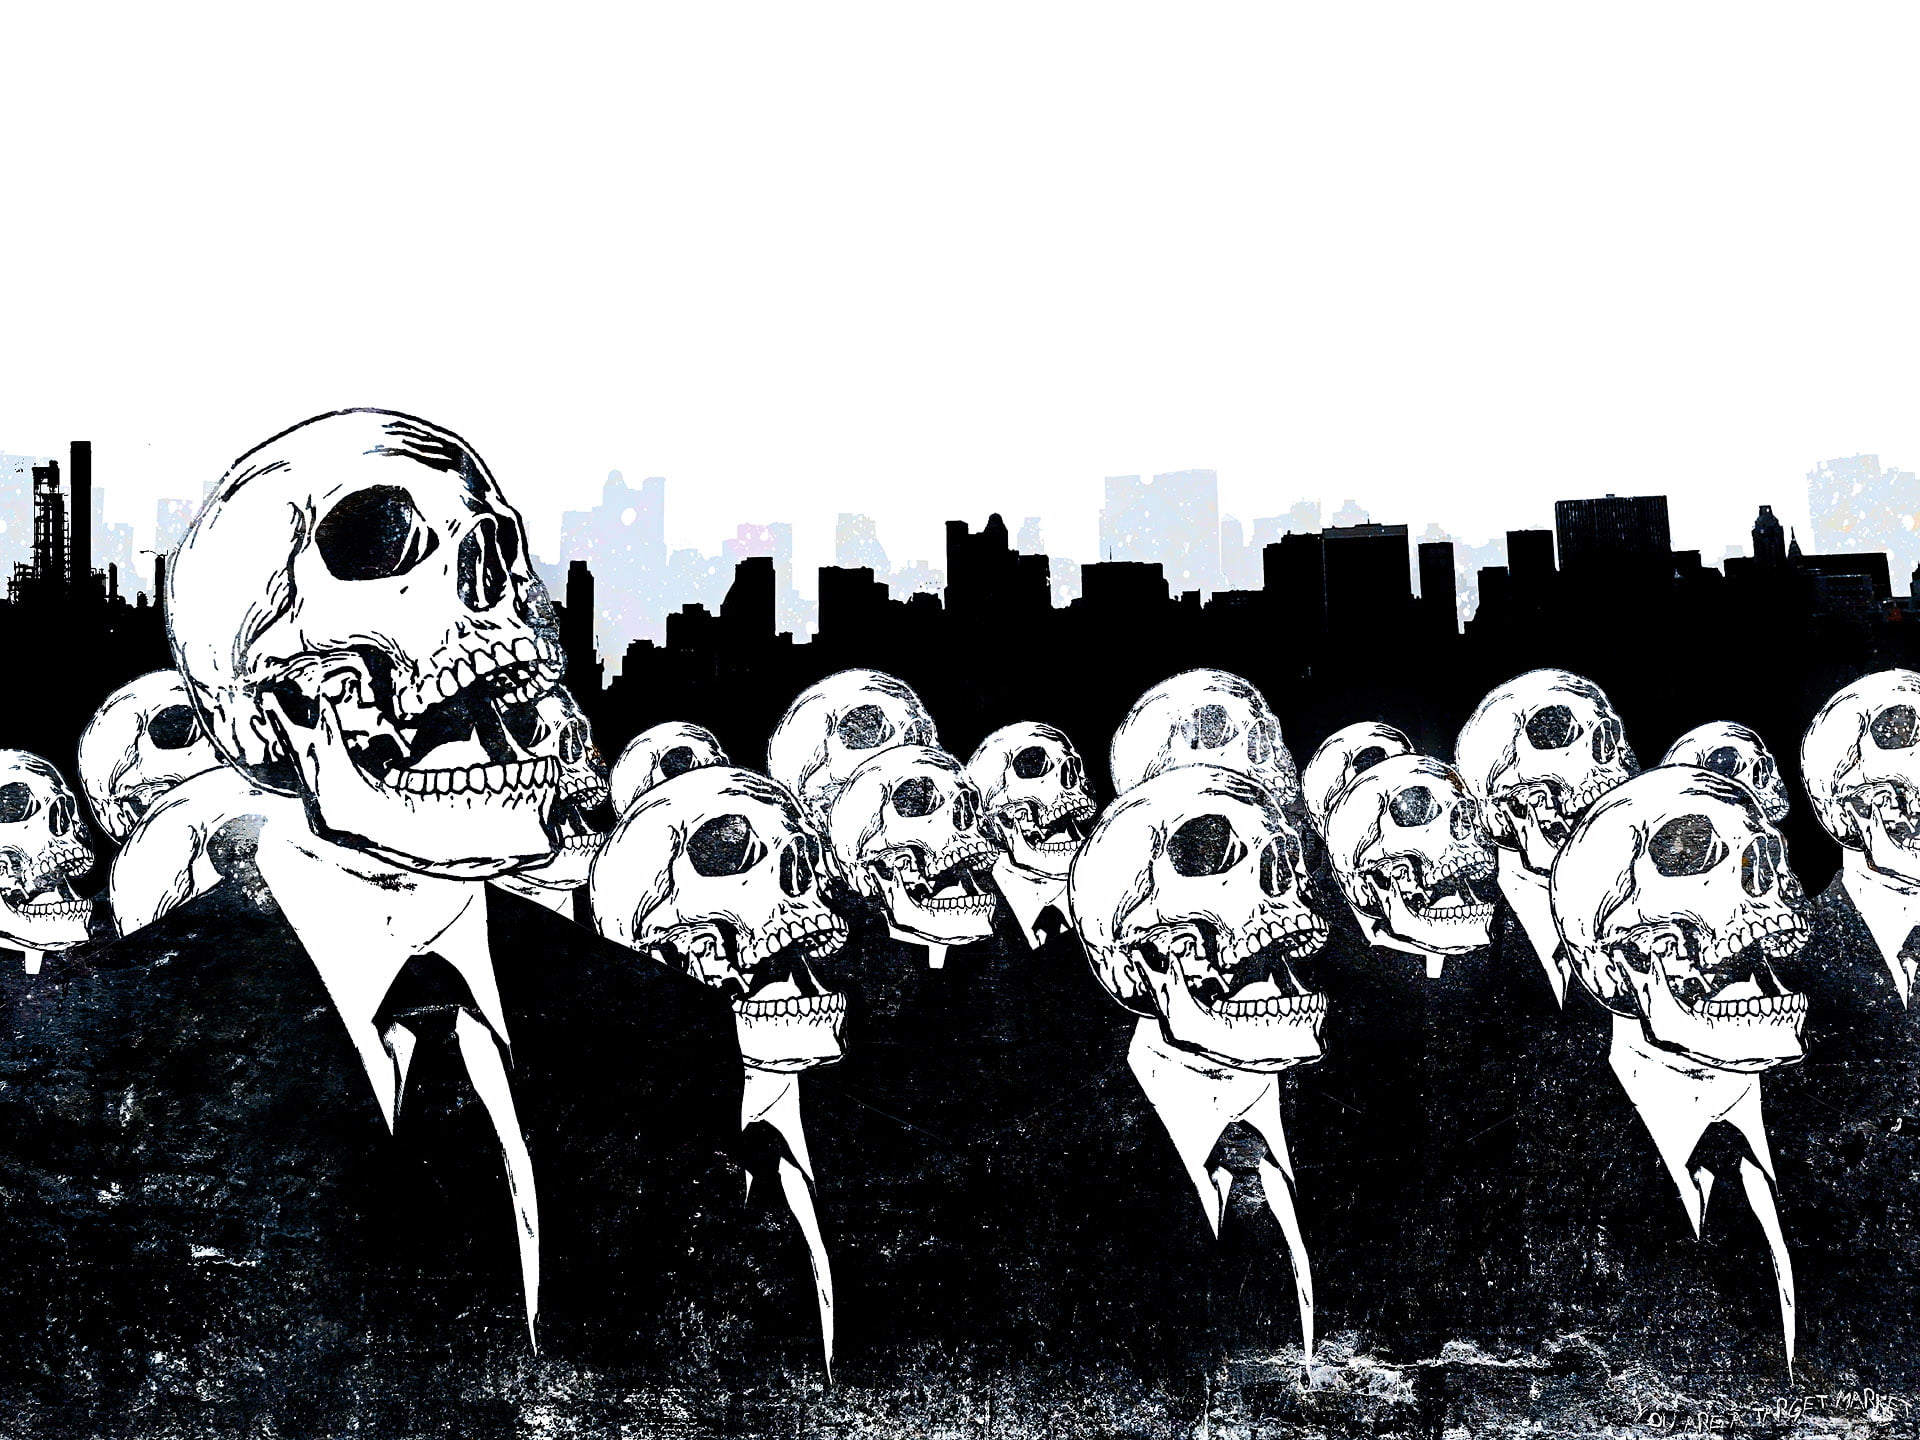 skeletons wearing suit jacket illustration, the crowd, skull